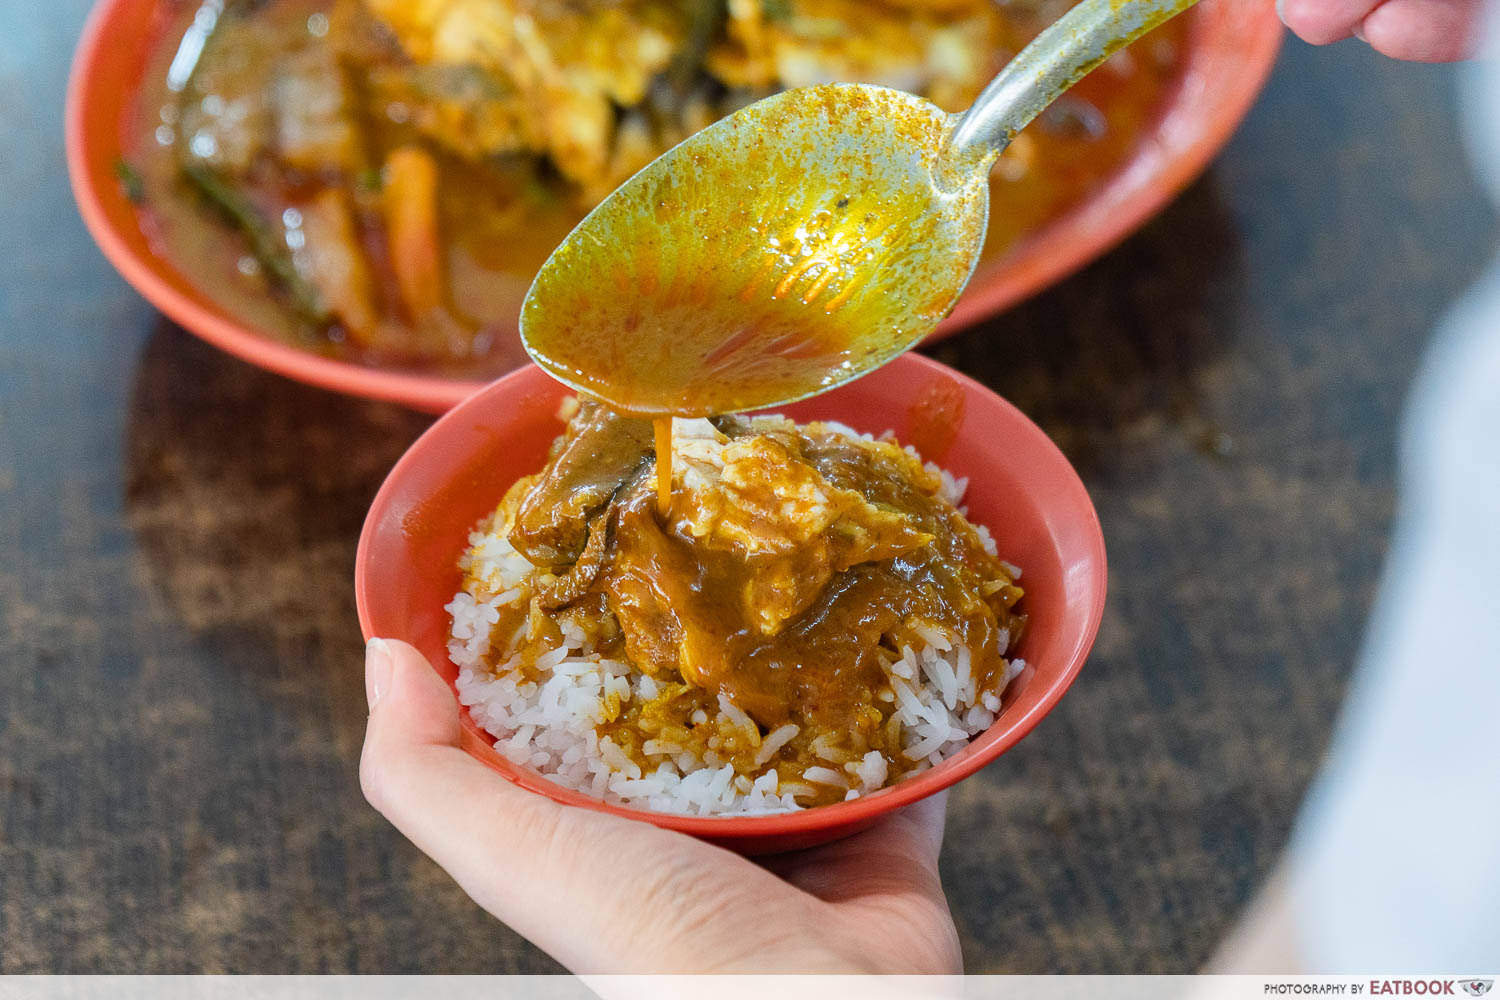 zai shun curry fish head curry rice